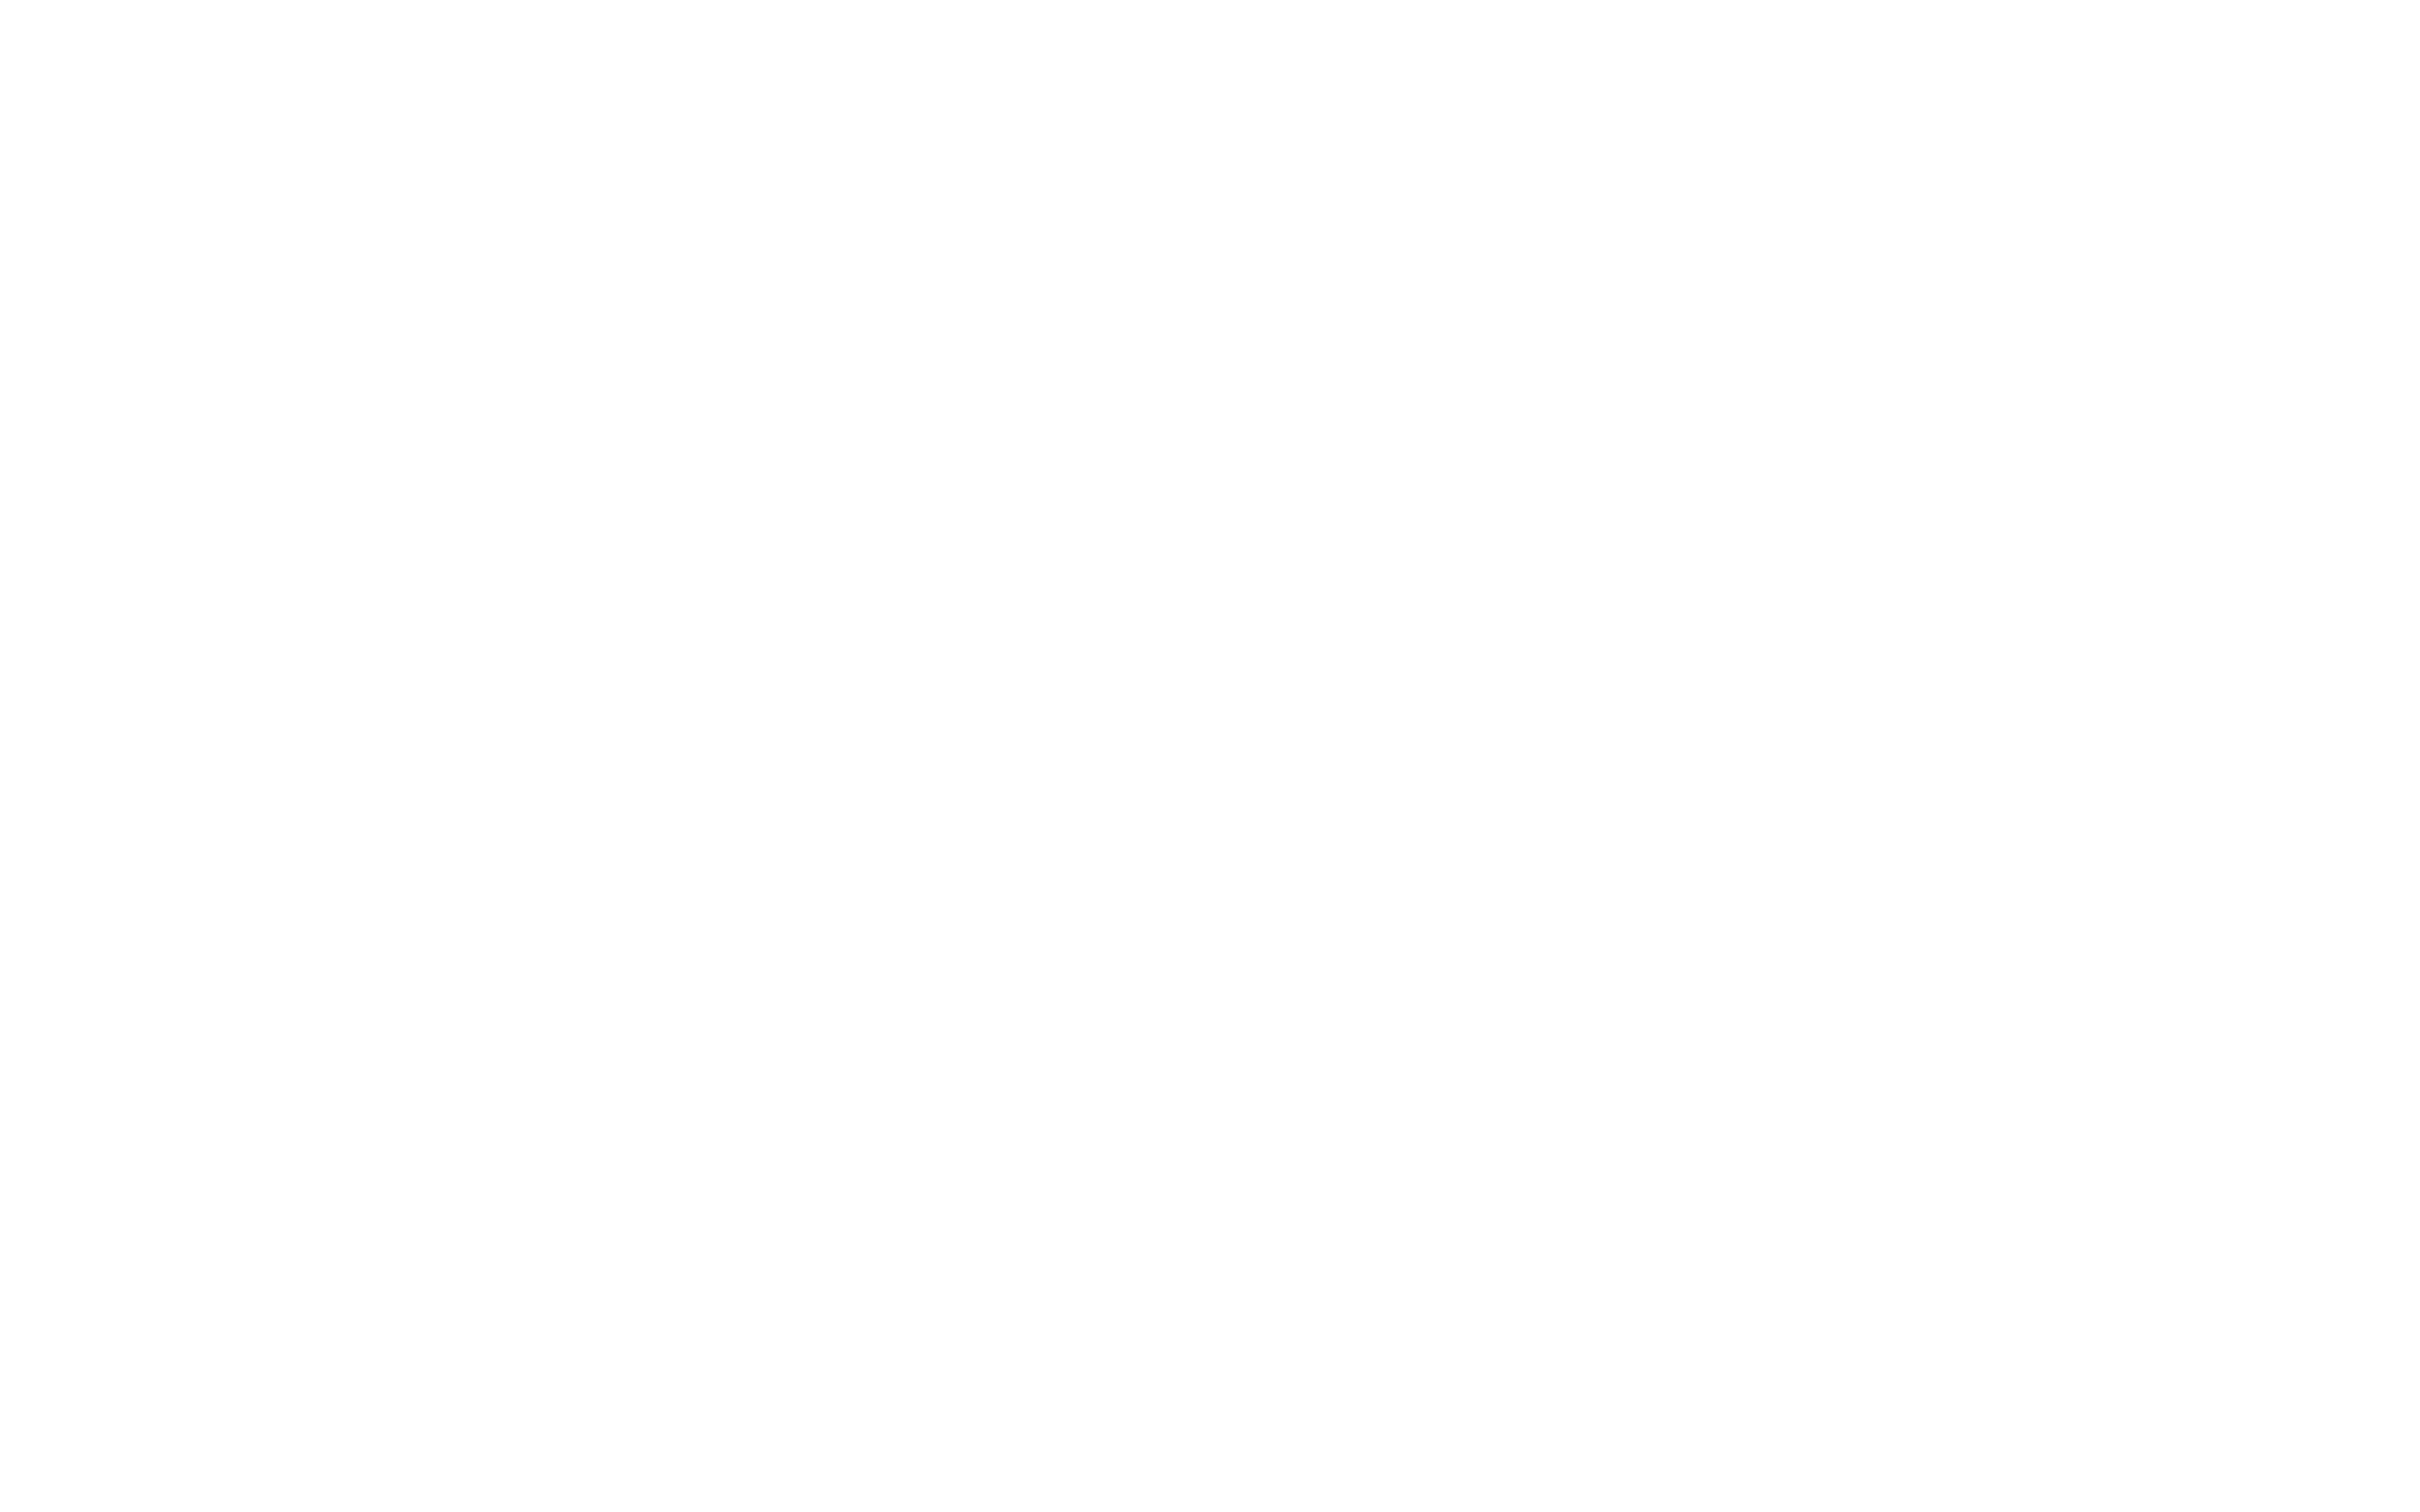 mack-trucks